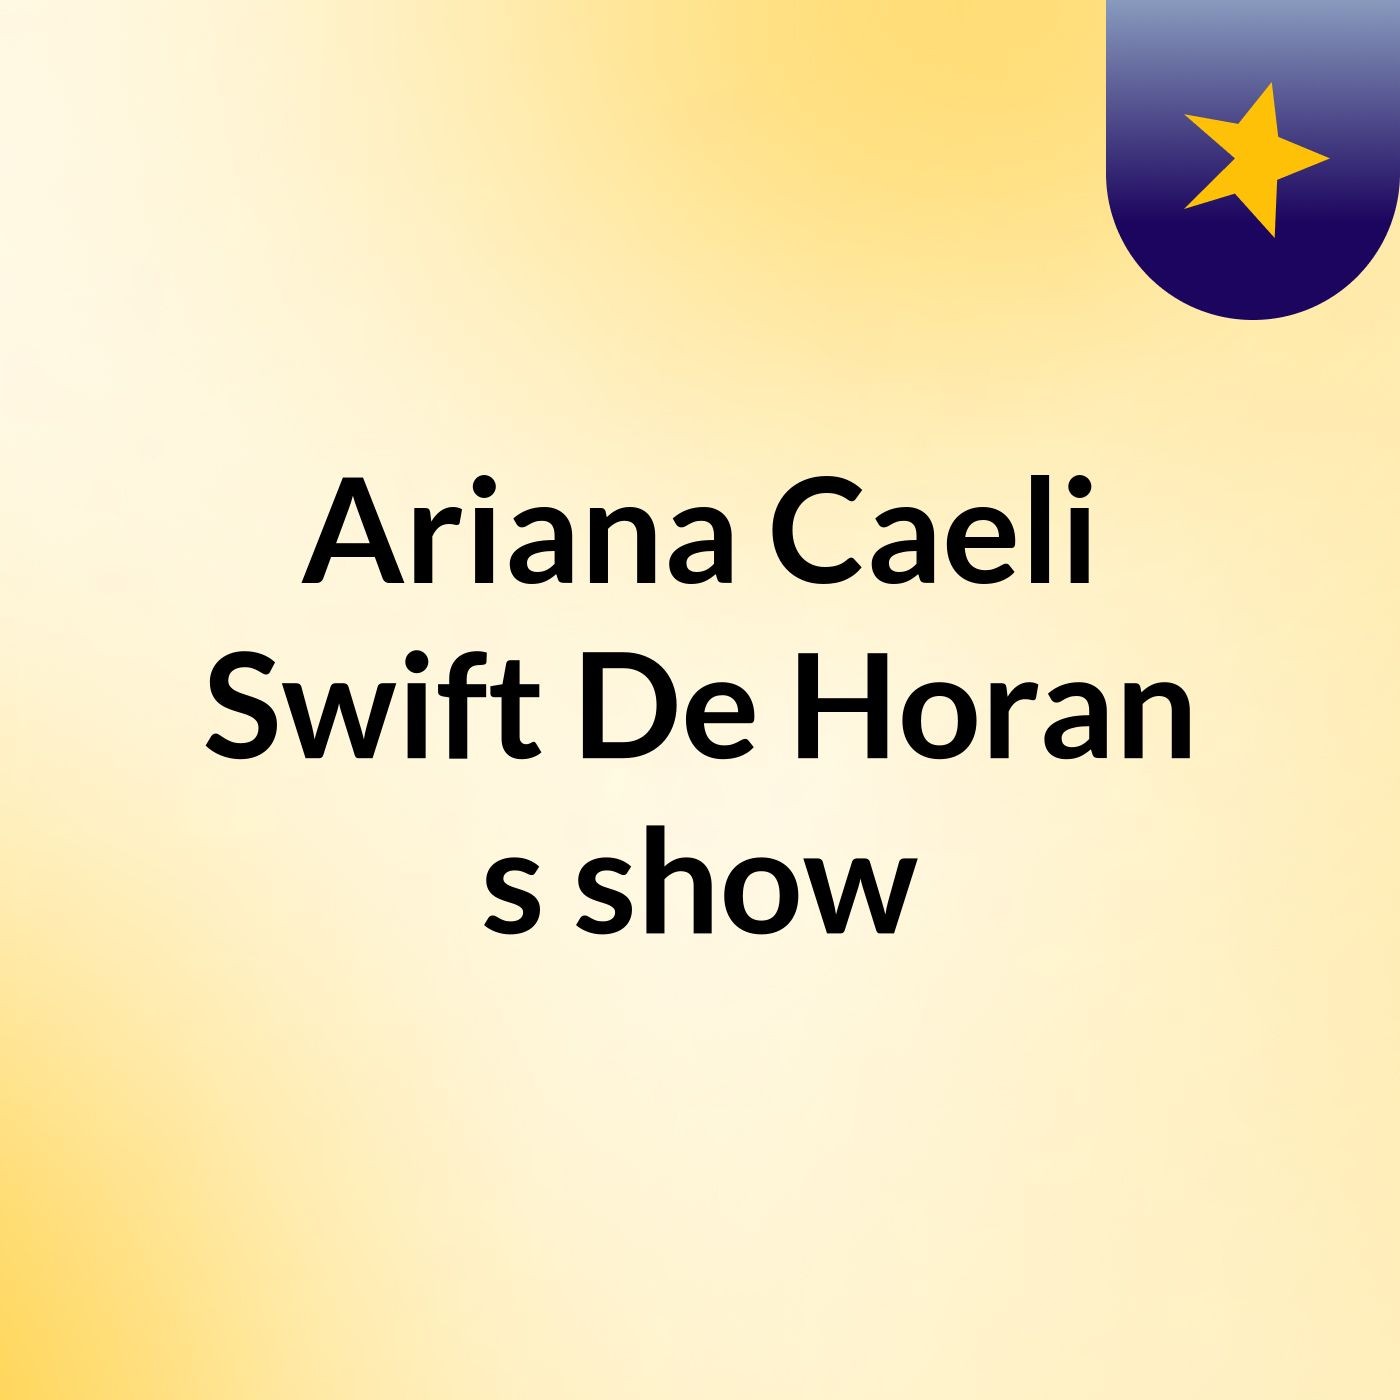 Ariana Caeli Swift De Horan's show